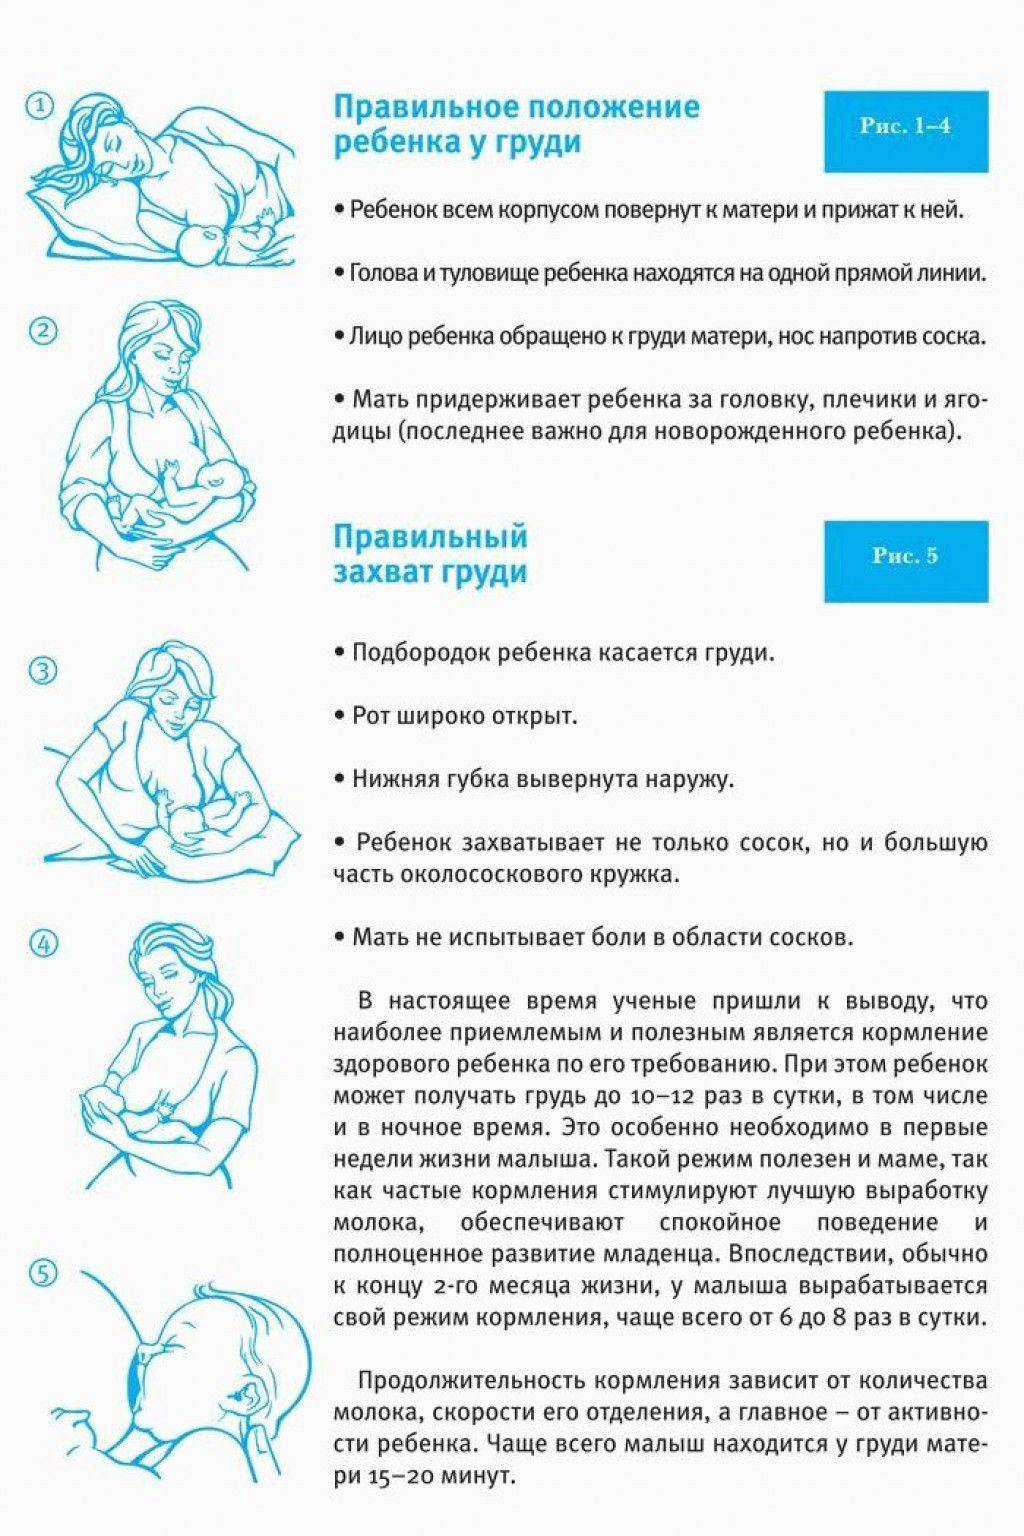 Режим кормящей матери. Как правильно приложить ребенка к грудному вскармливанию. Правильное положение для кормления новорожденного грудным молоком. Как правильно приложить ребенка к грудному вскармливанию лежа. Правильное положение младенца при грудном вскармливании.